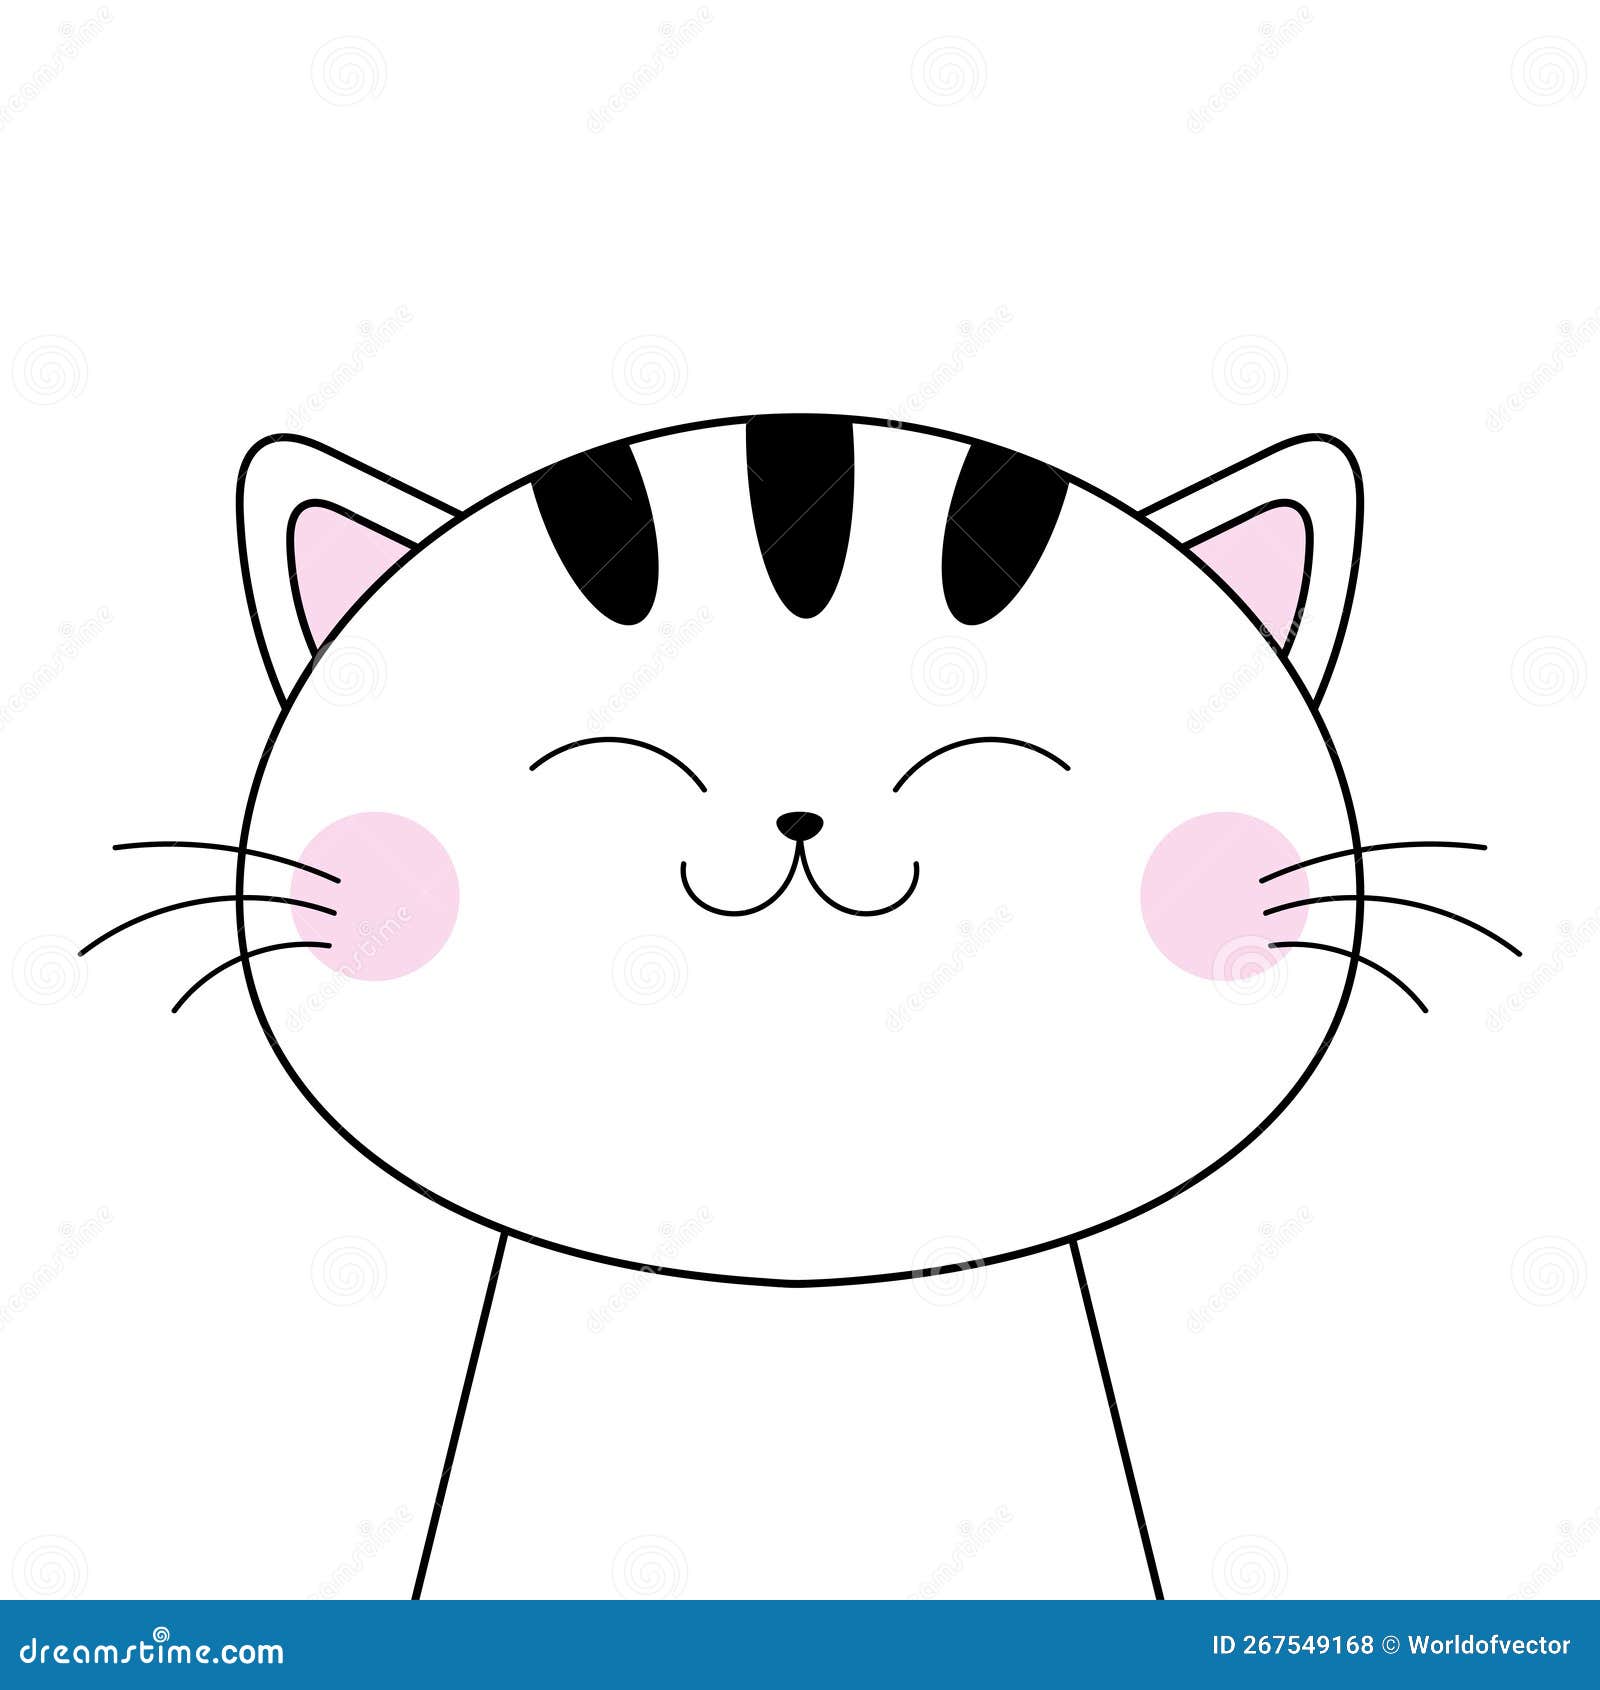 Cat icon. Funny pet black line symbol